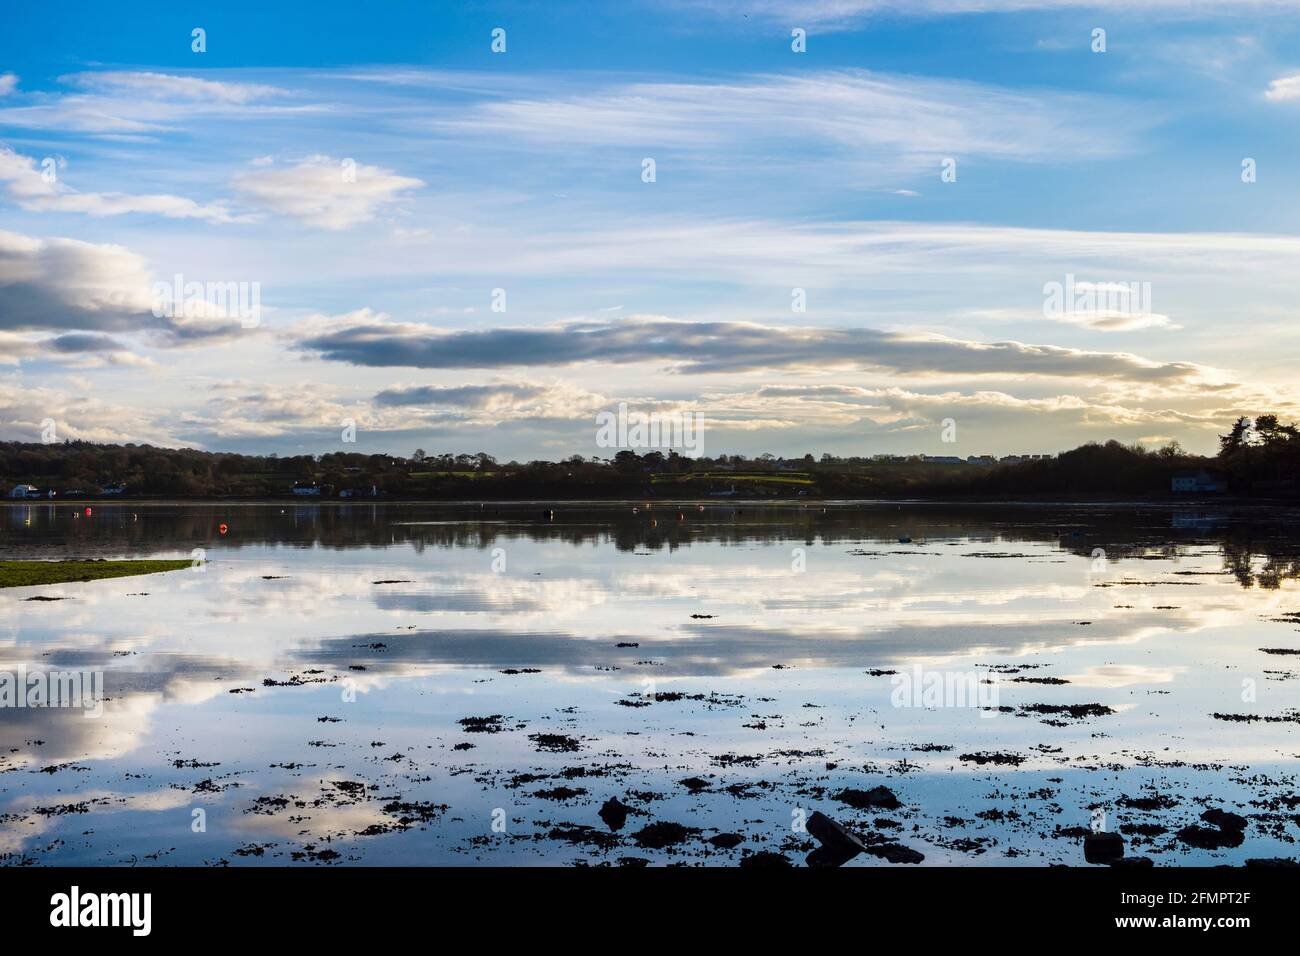 Scena tranquilla con nuvole bianche e cielo riflesso in mare calmo ad alta marea in luce solare invernale. Red Wharf Bay, Isola di Anglesey, Galles, Regno Unito, Gran Bretagna Foto Stock